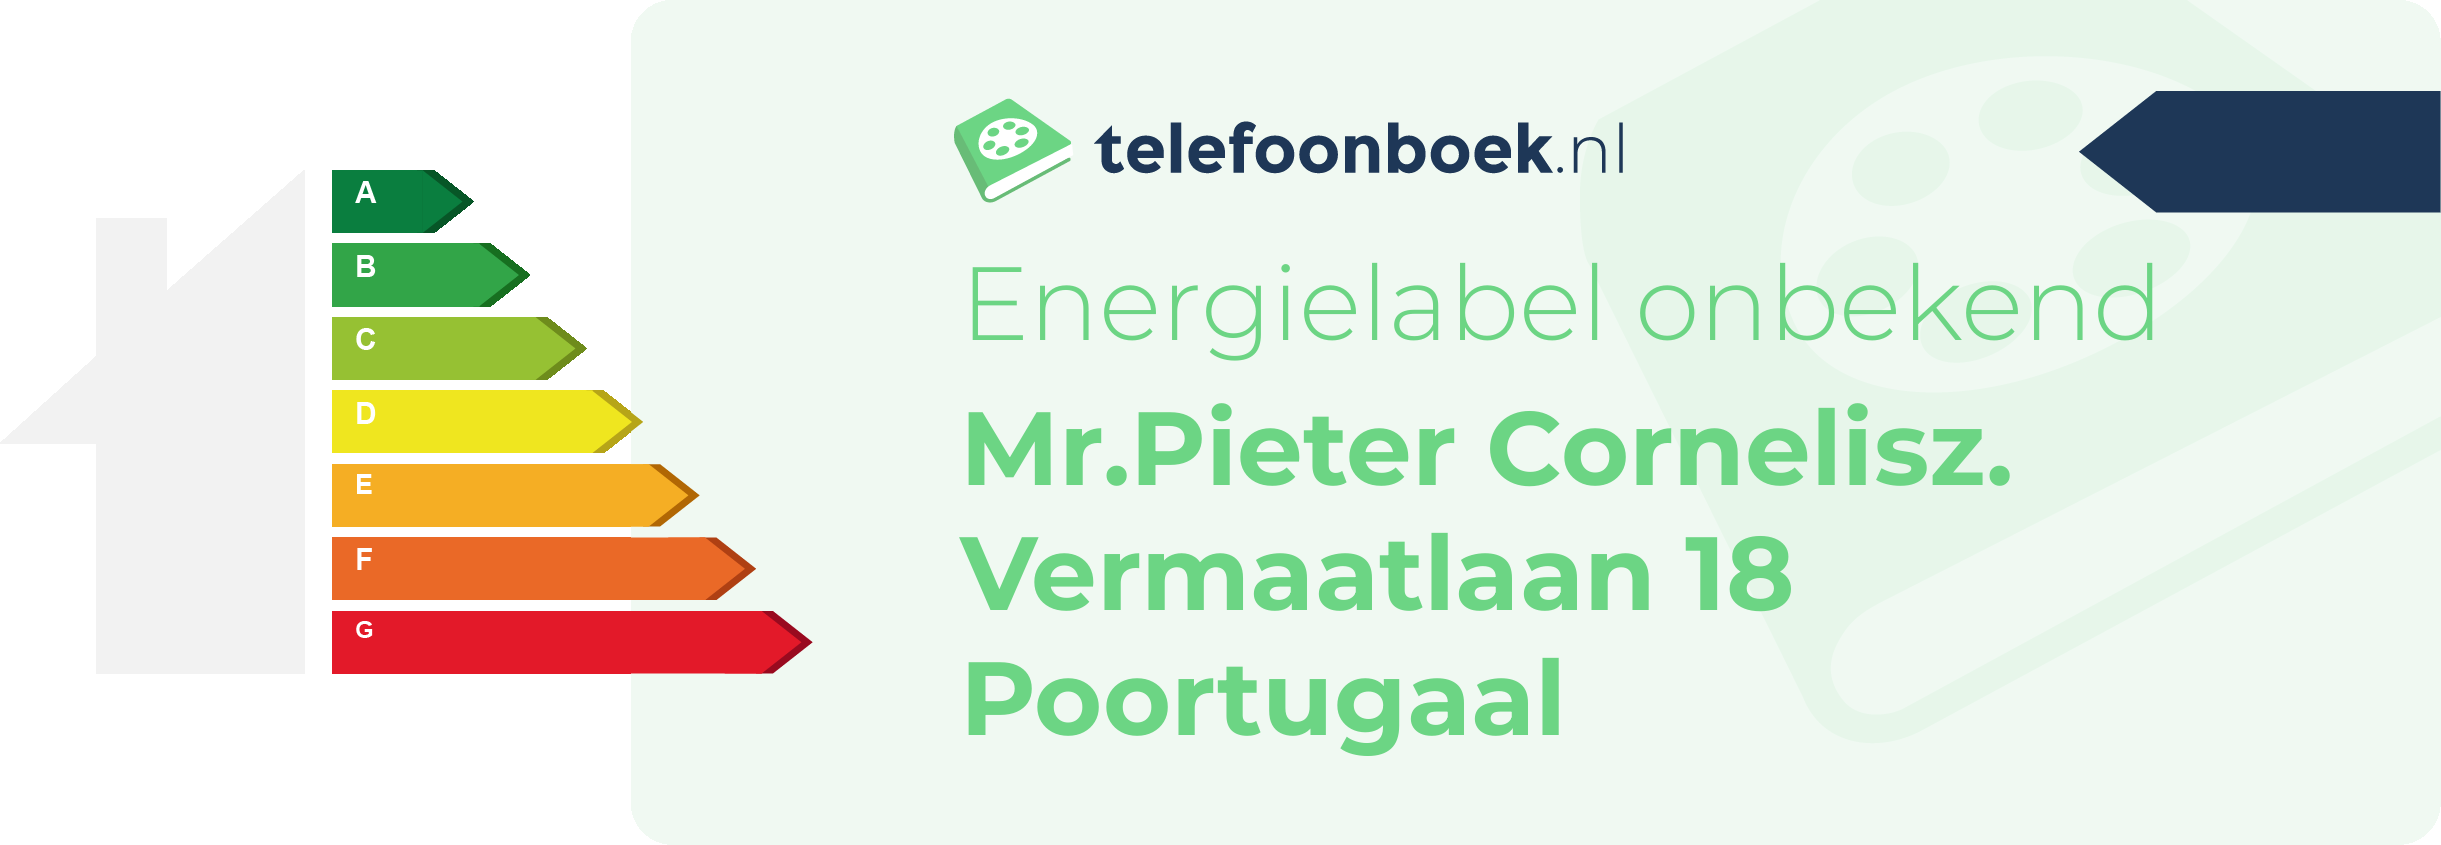 Energielabel Mr.Pieter Cornelisz. Vermaatlaan 18 Poortugaal